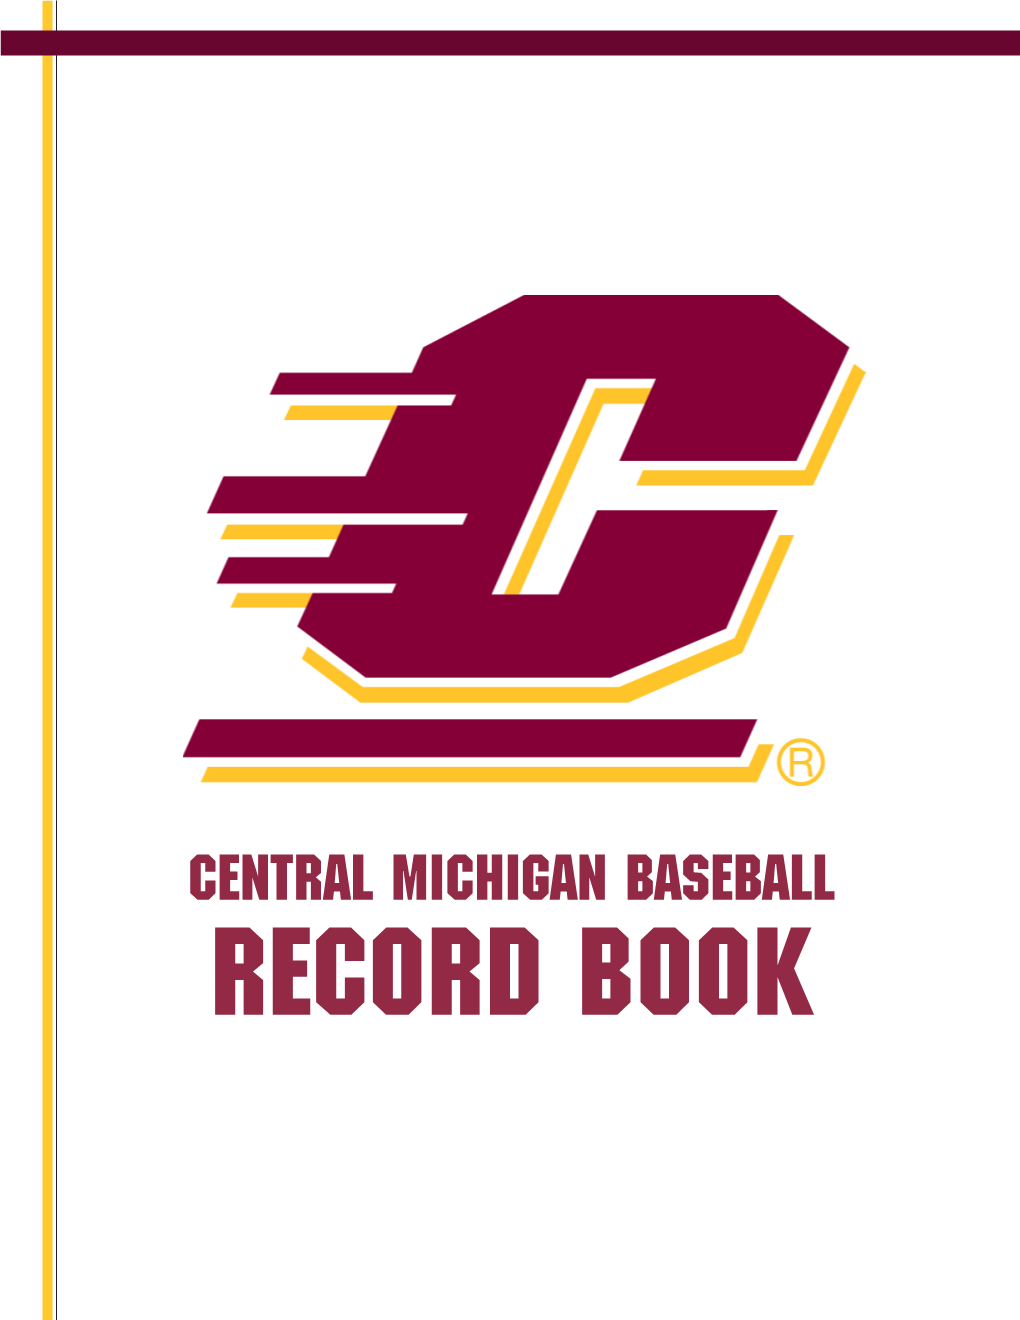 CENTRAL MICHIGAN Baseball RECORD BOOK CENTRAL MICHIGAN BASEBALL RECORD BOOK ATHLETIC HONORS ALL-AMERICA Shawn Hare (Of)